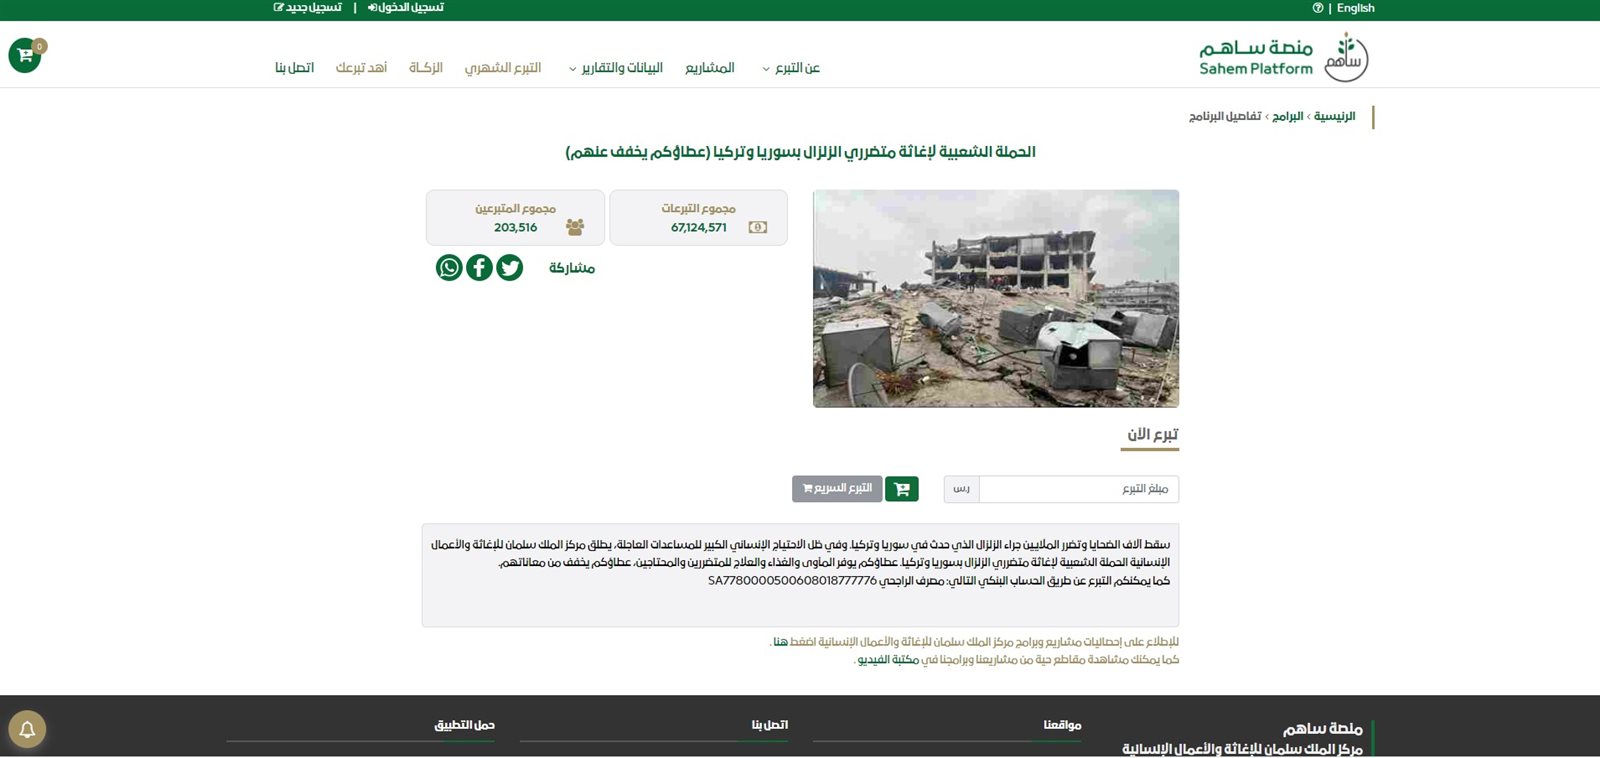 التبرعات وصلت 67 مليون ريال.. منصة ساهم السعودية تطلق حملة لإغاثة متضرري الزلزال بسوريا وتركيا 2